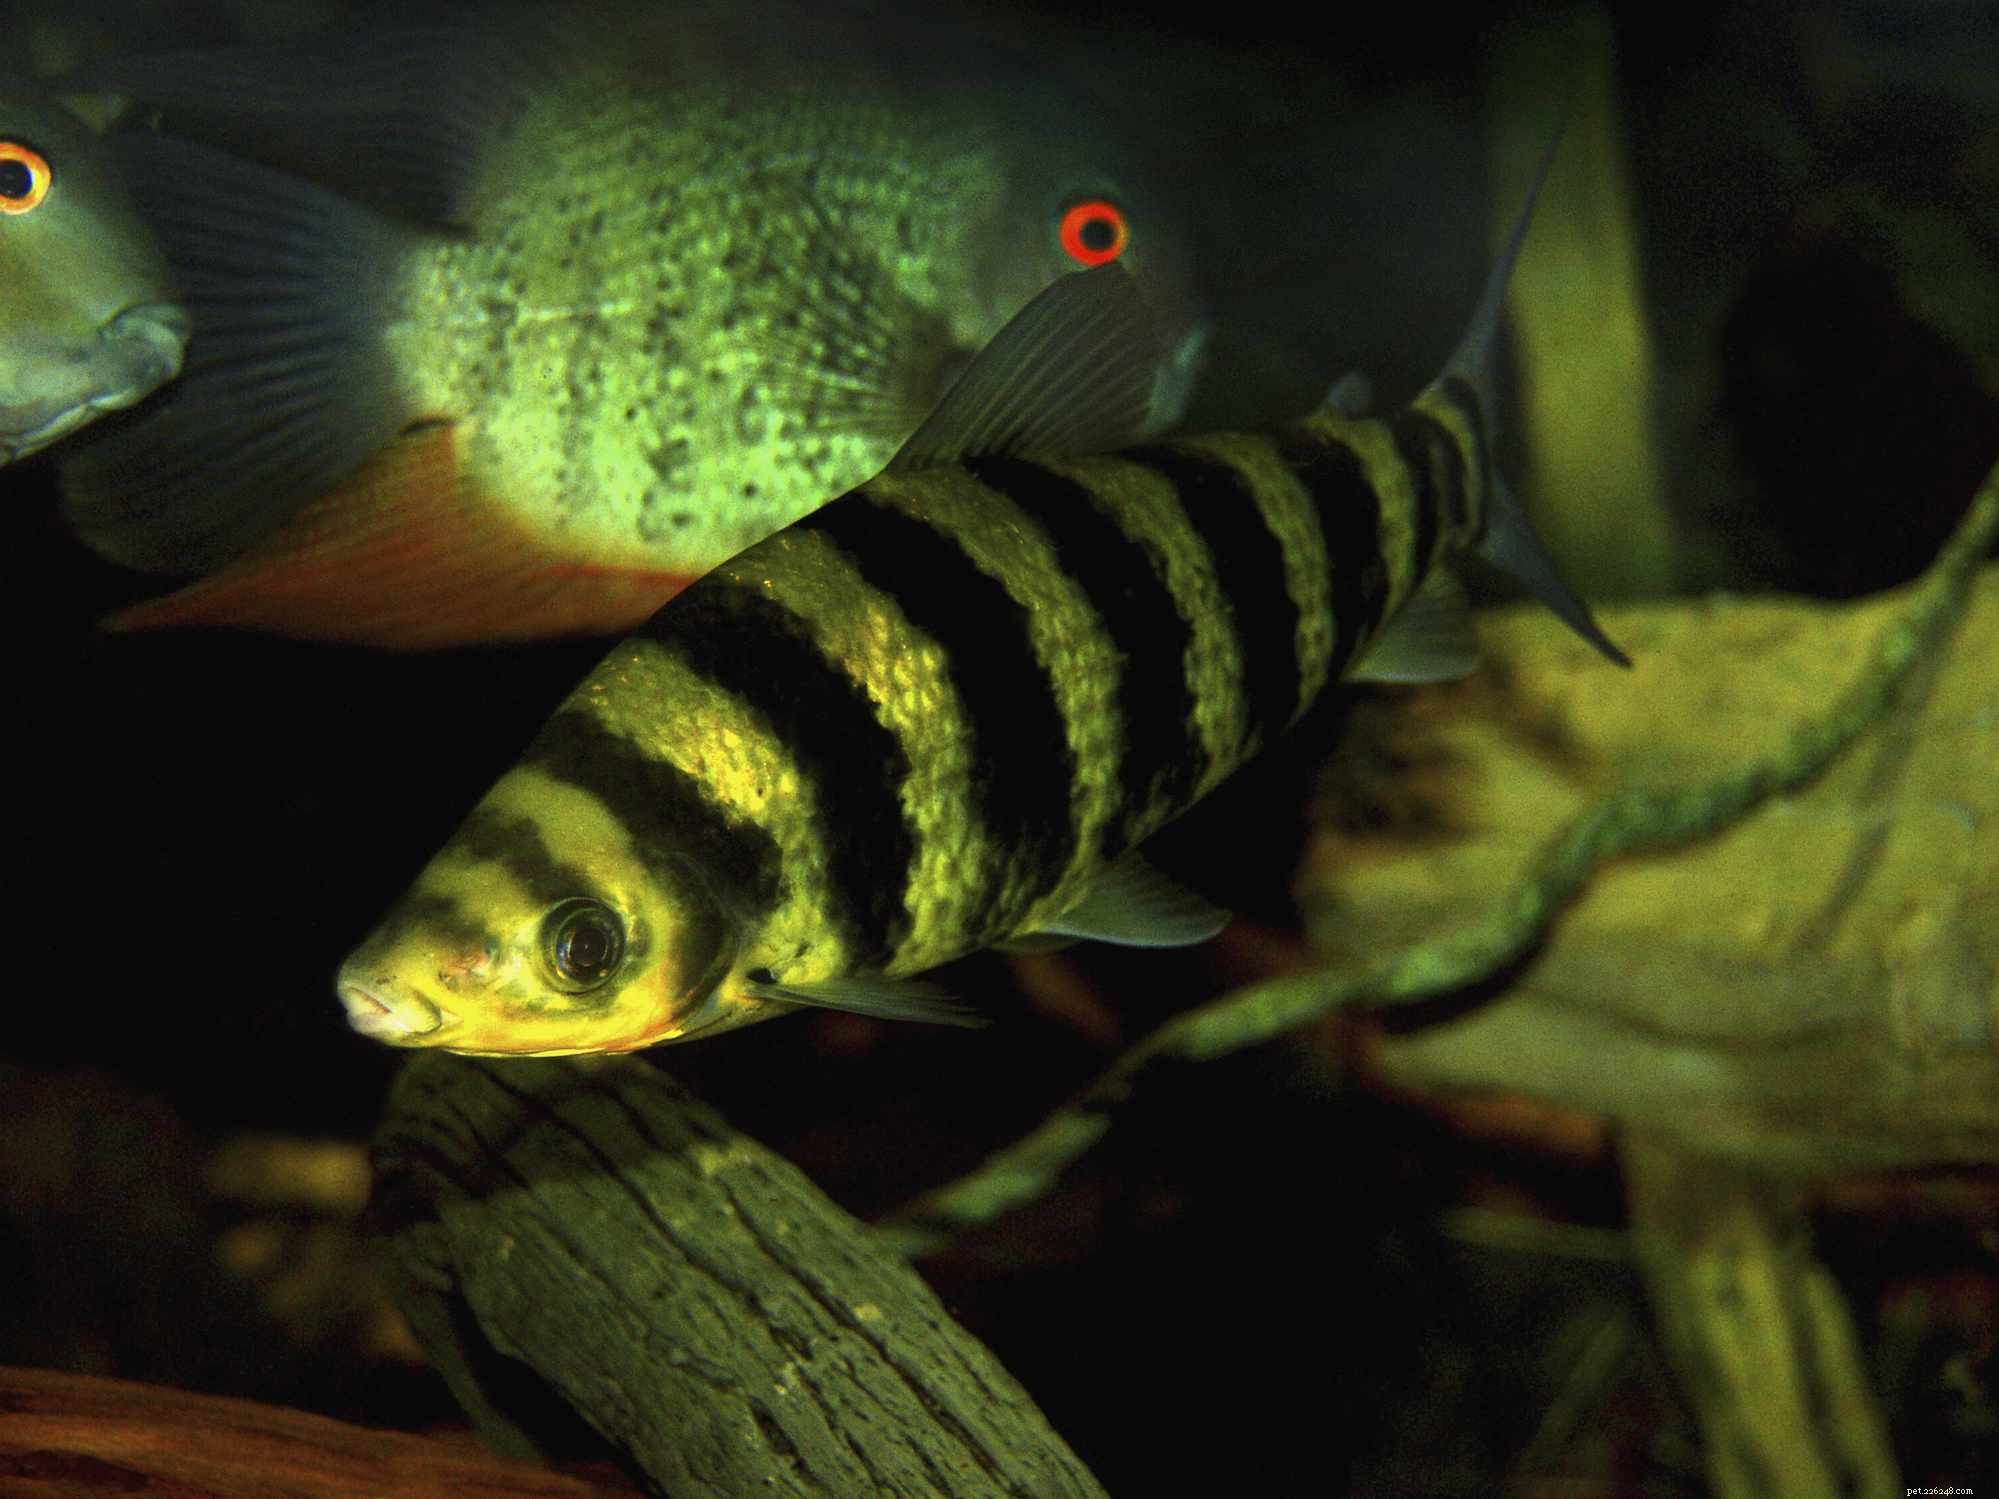 Perfil da espécie de peixe Leporinus de faixa preta